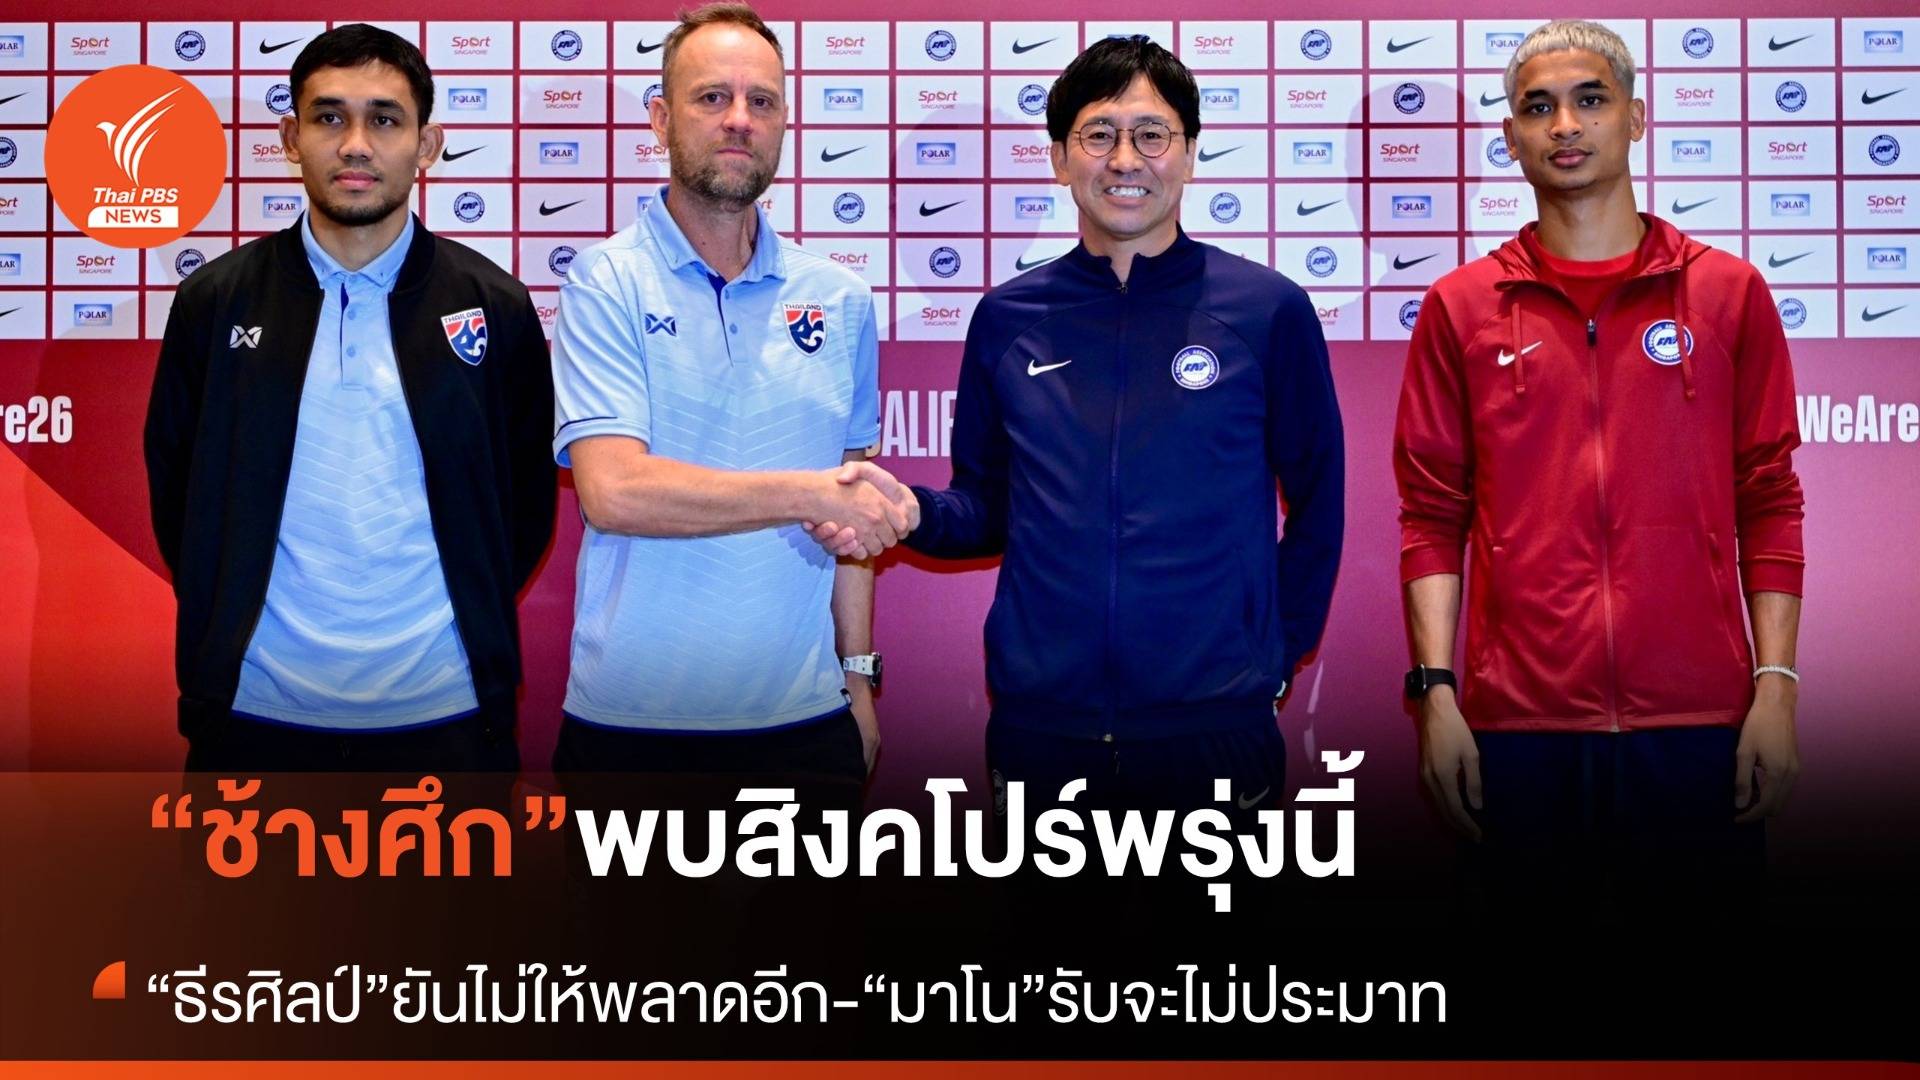 “ทีมชาติไทย” แถลงความพร้อมก่อนพบทีมชาติสิงคโปร์